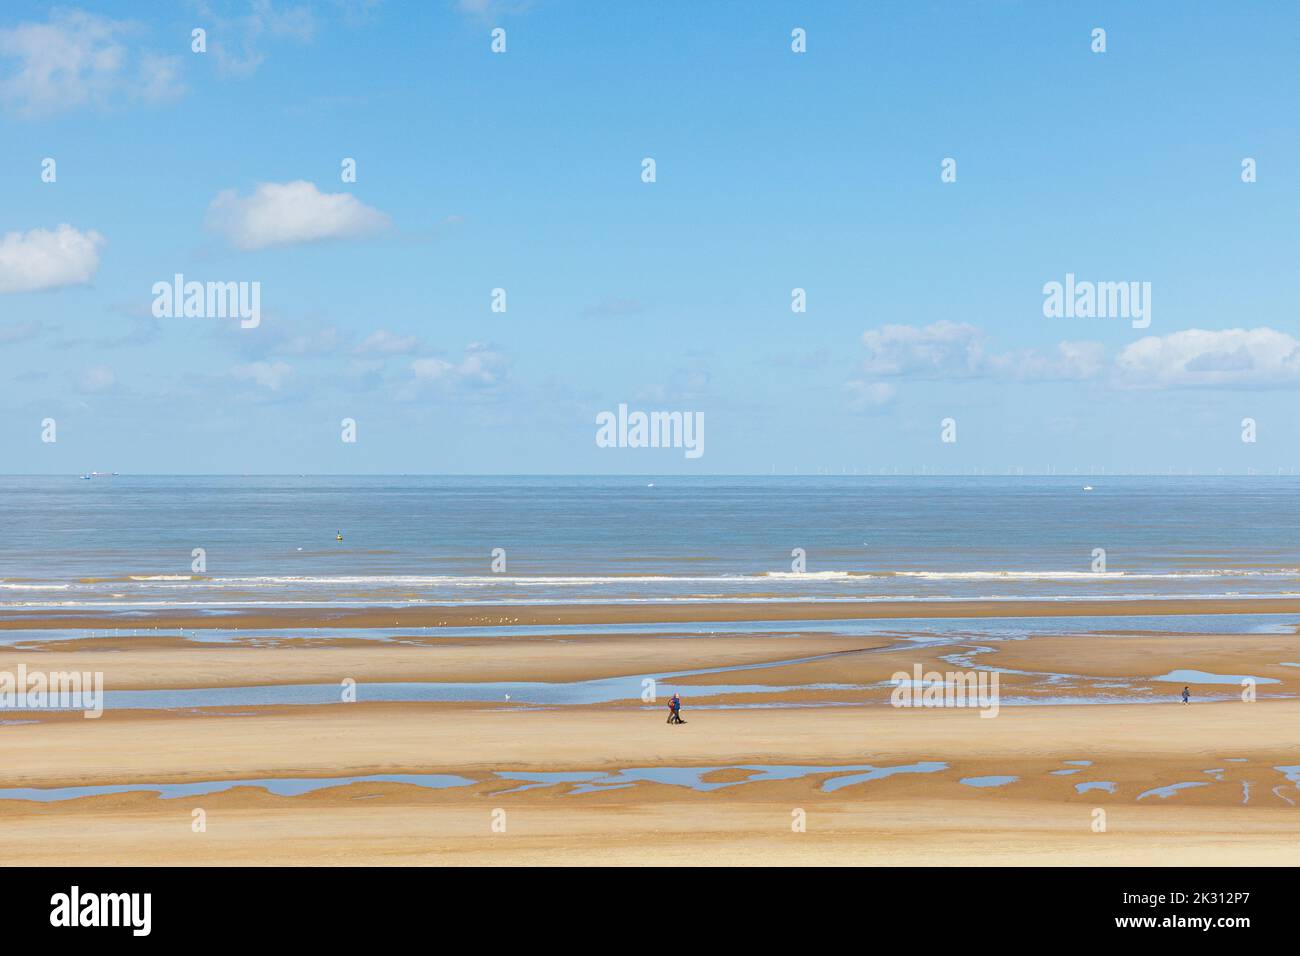 Belgique, Flandre Occidentale, de Haan, Plage de sable avec ligne d'horizon claire au-dessus de la mer du Nord en arrière-plan Banque D'Images